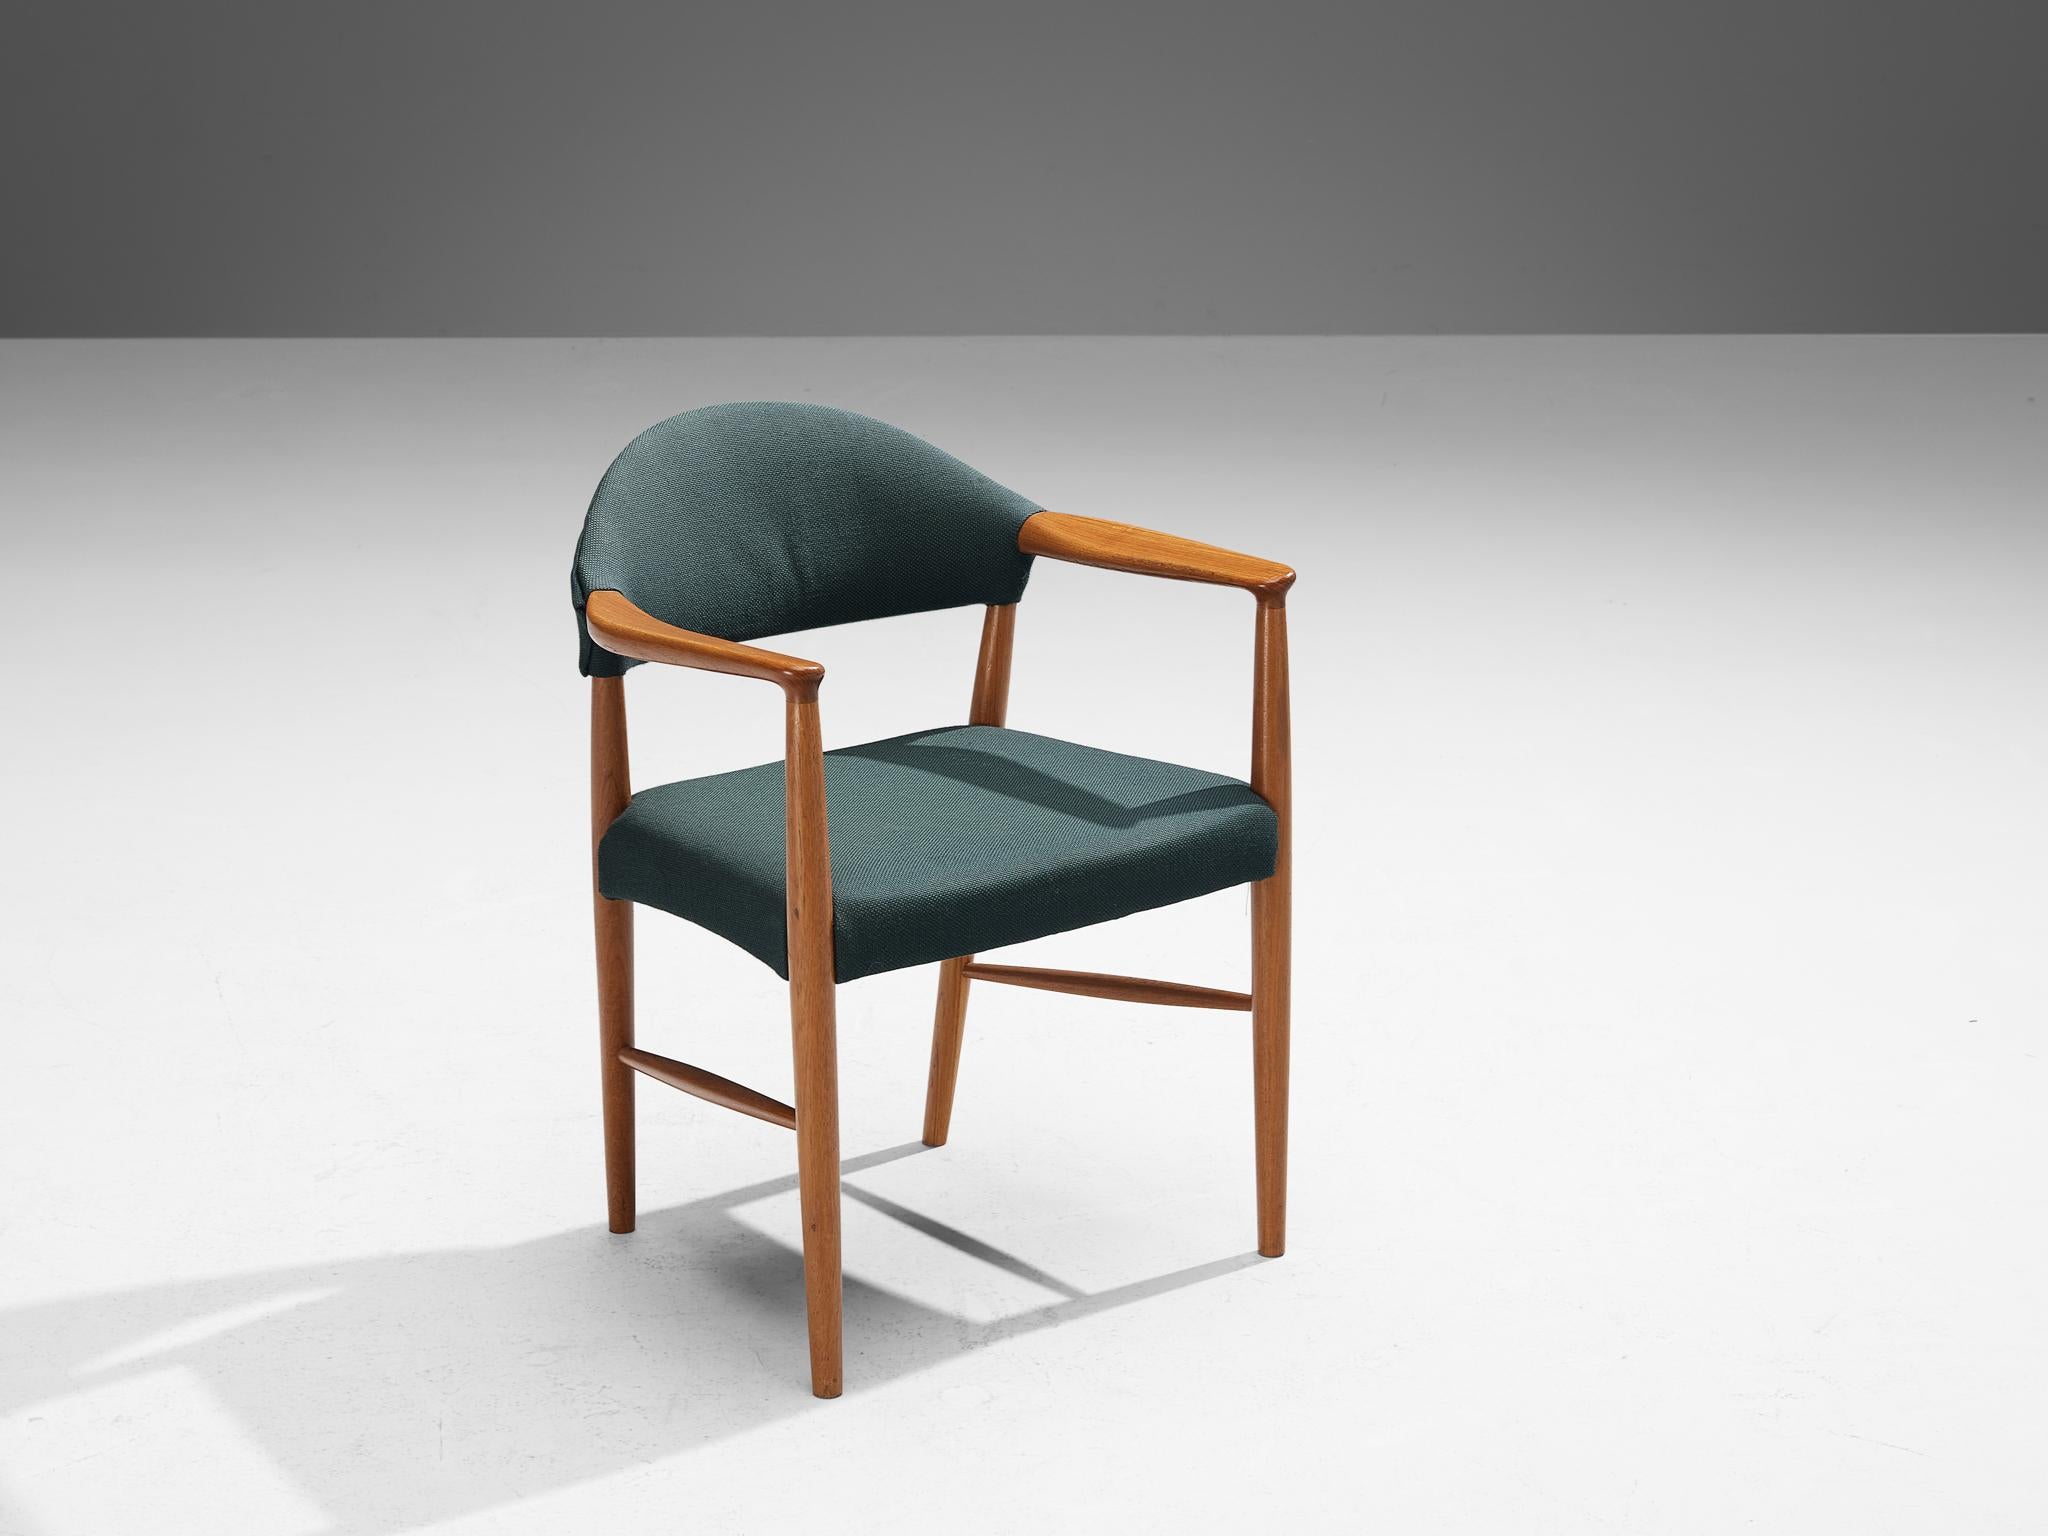 Mid-20th Century Kurt Olsen for Slagelse Mobelvaerk Armchair in Teak and Green Upholstery For Sale